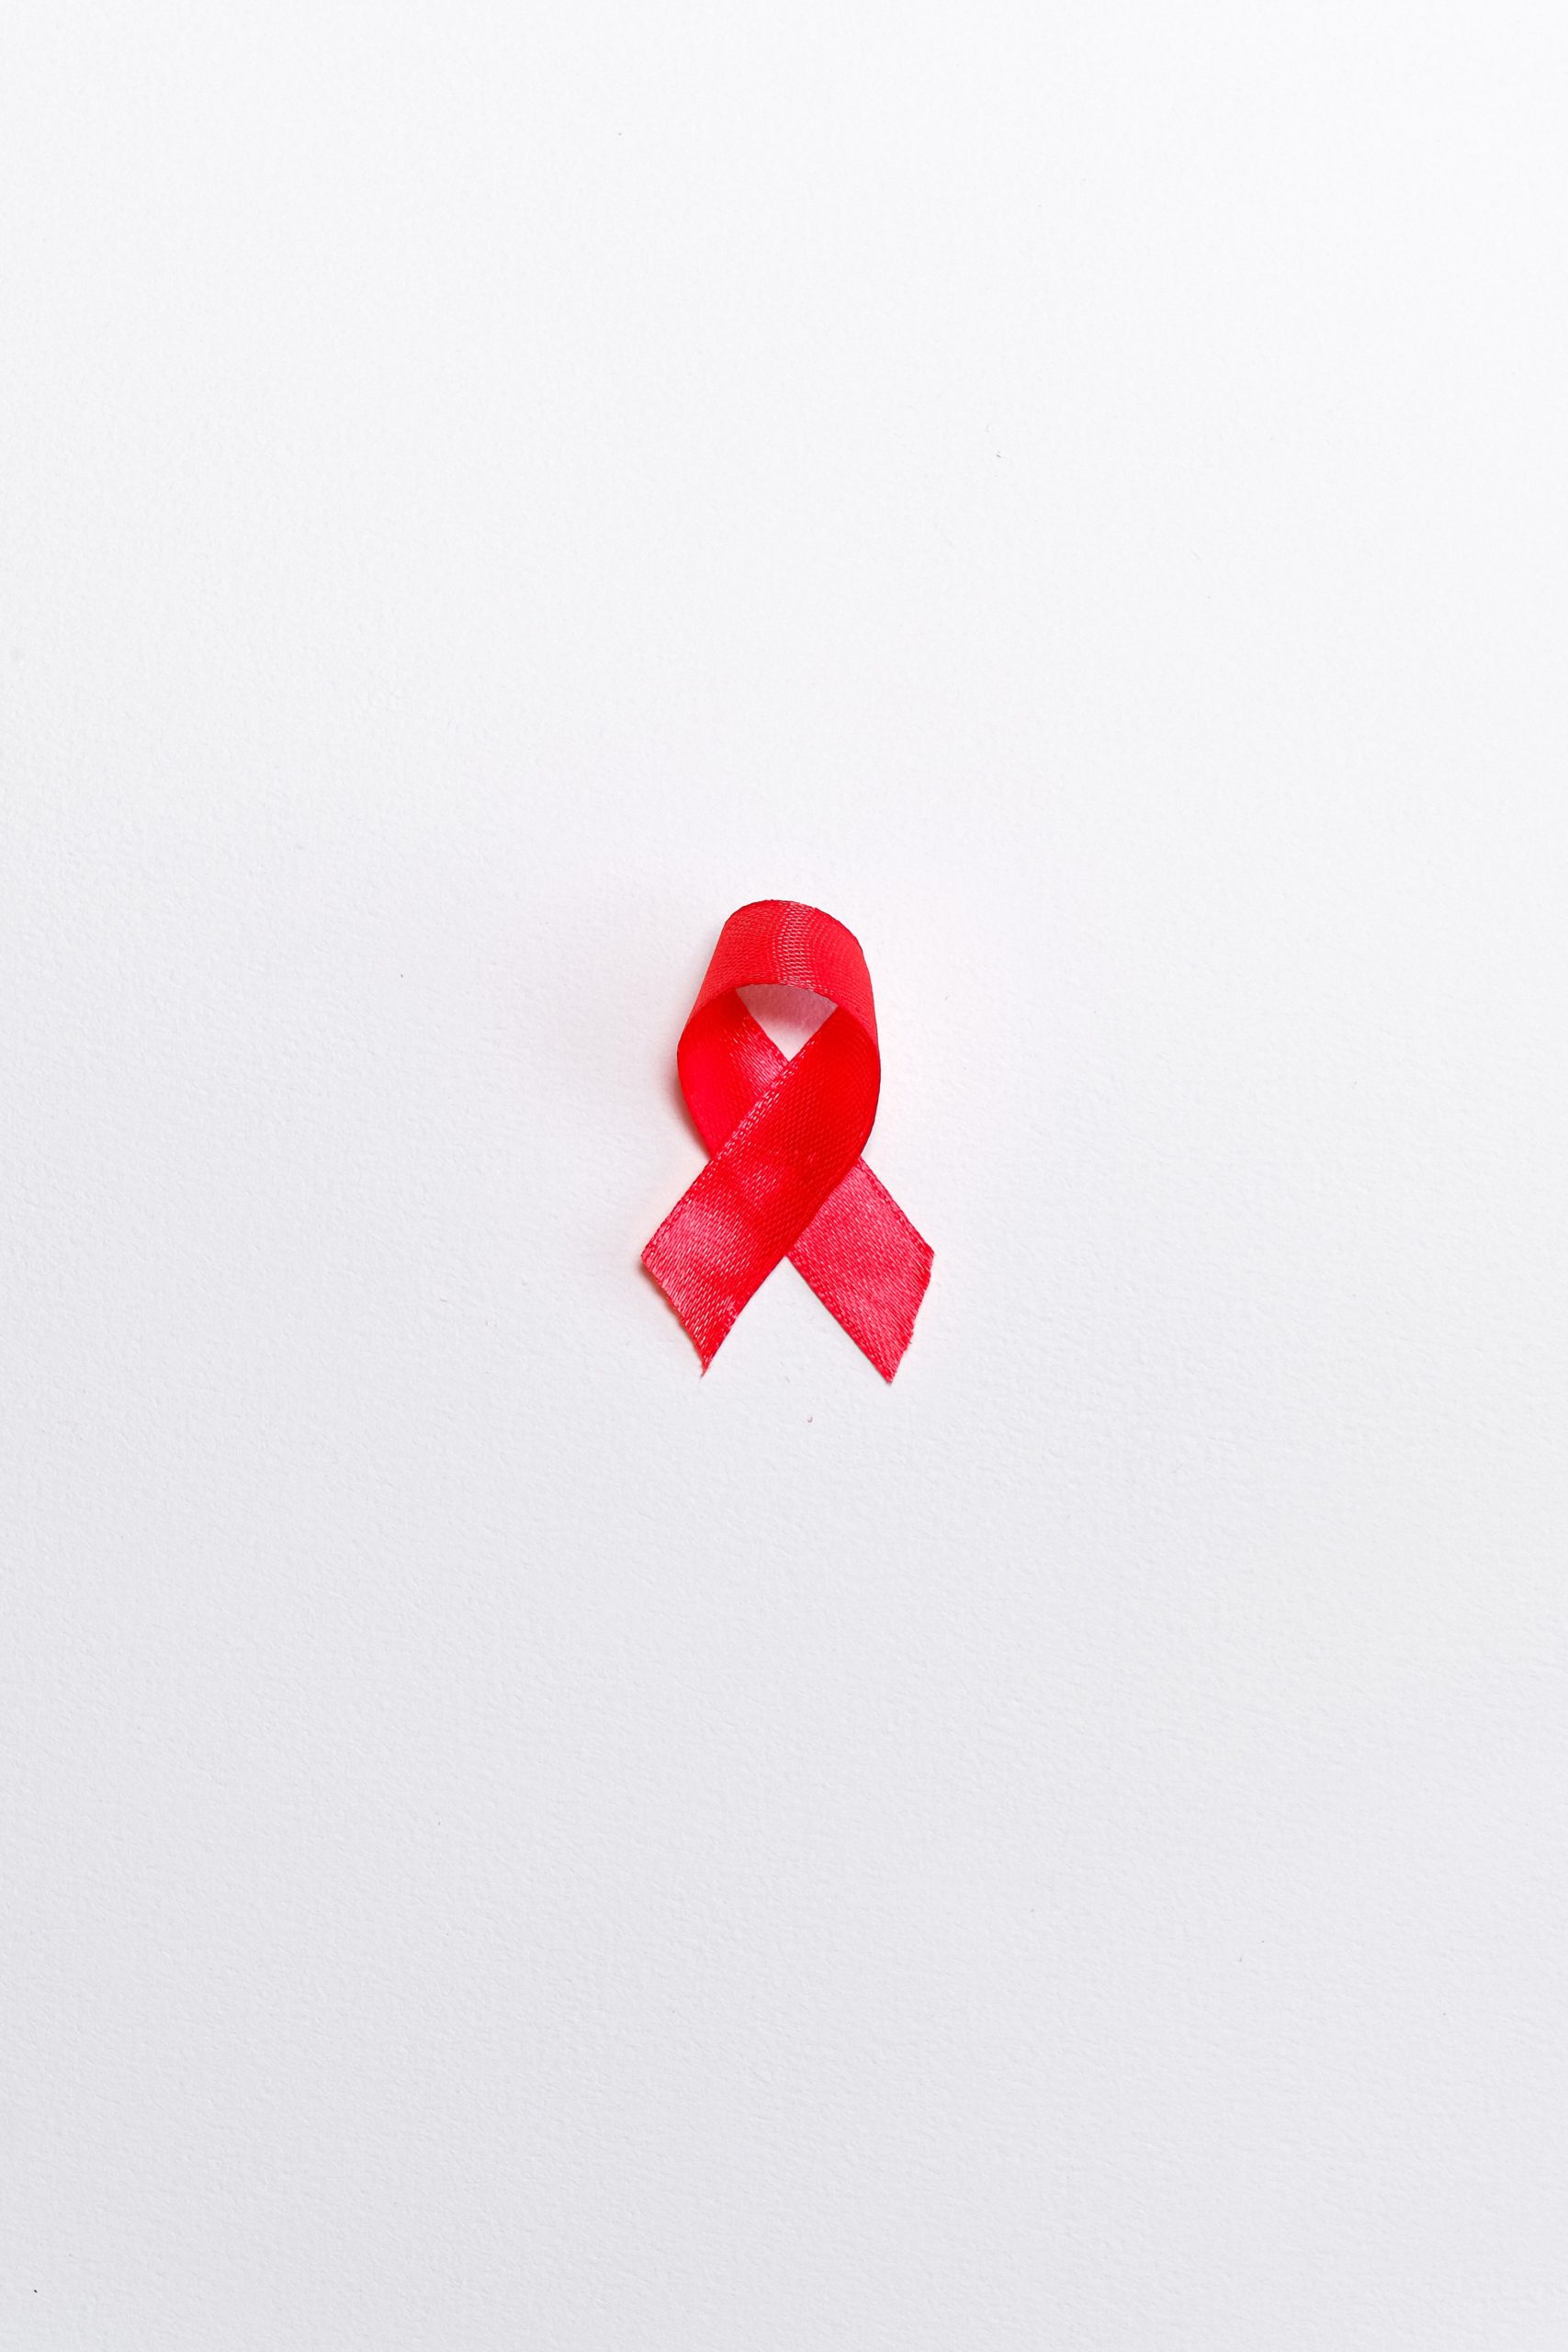 Read more about the article vih virus : traitement naturel contre le VIH SIDA